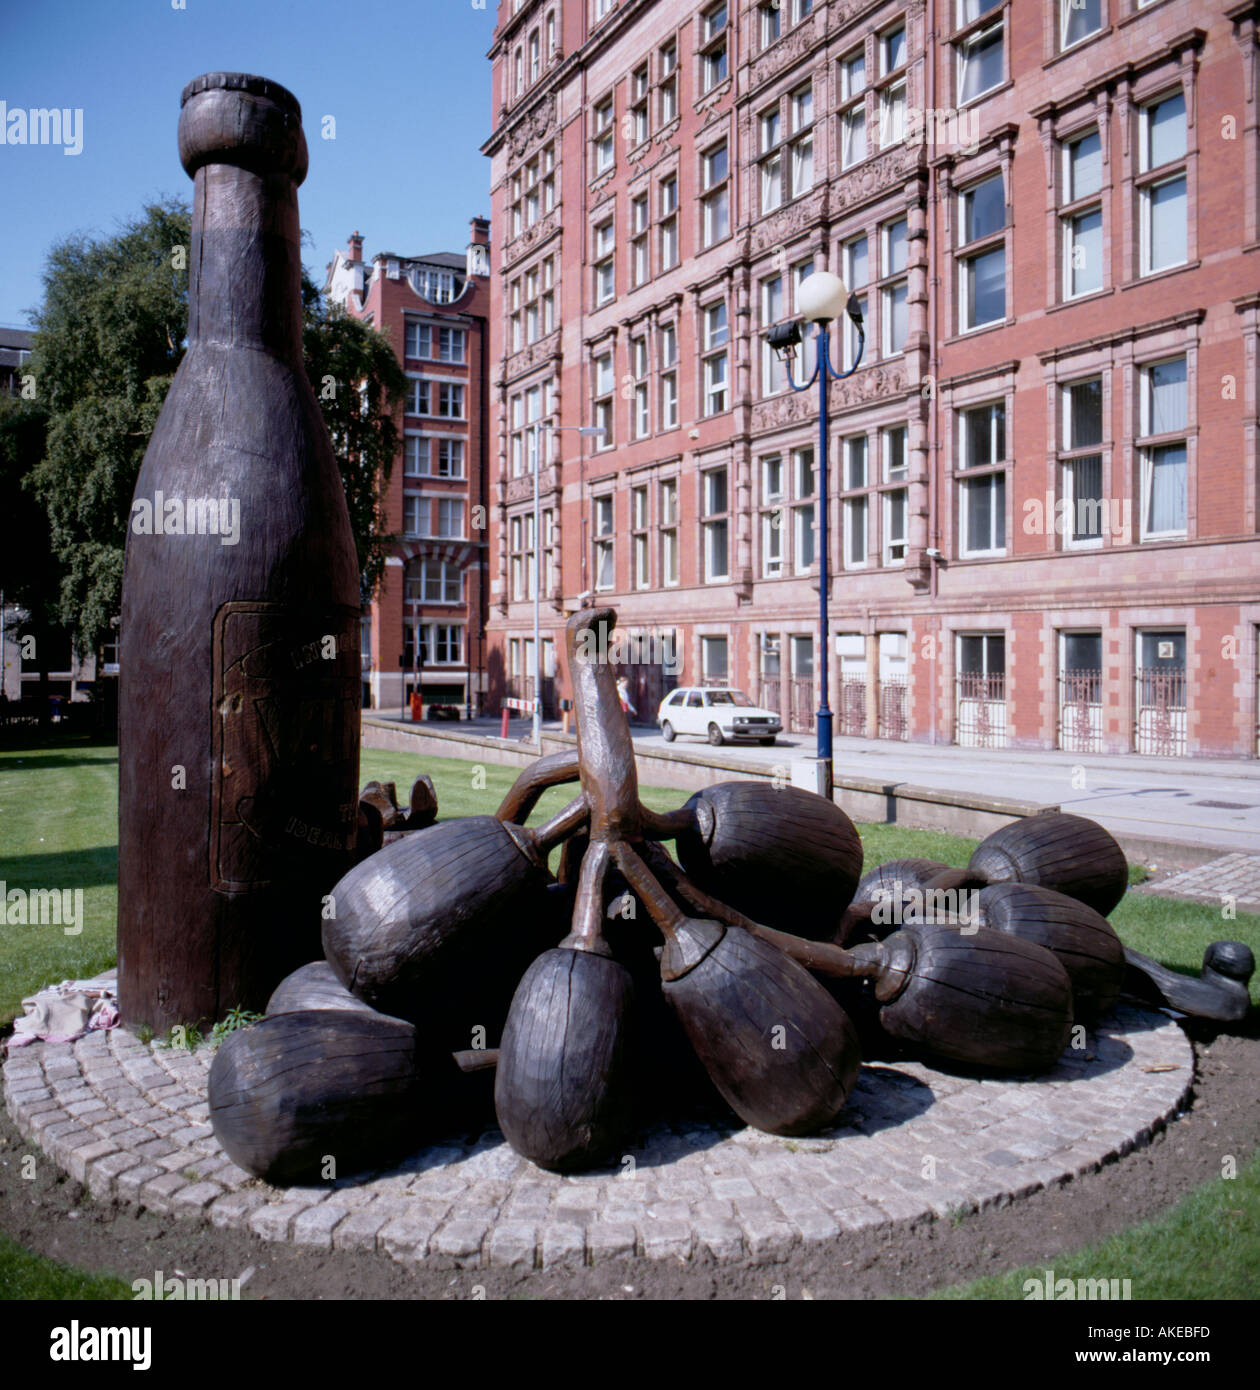 Un monumento a 'Vimto' (Kerry Morrison, 1992), en Granby Row, el centro de Manchester, Inglaterra, Reino Unido. Fotografía tomada el 1 de septiembre de 1999. Foto de stock